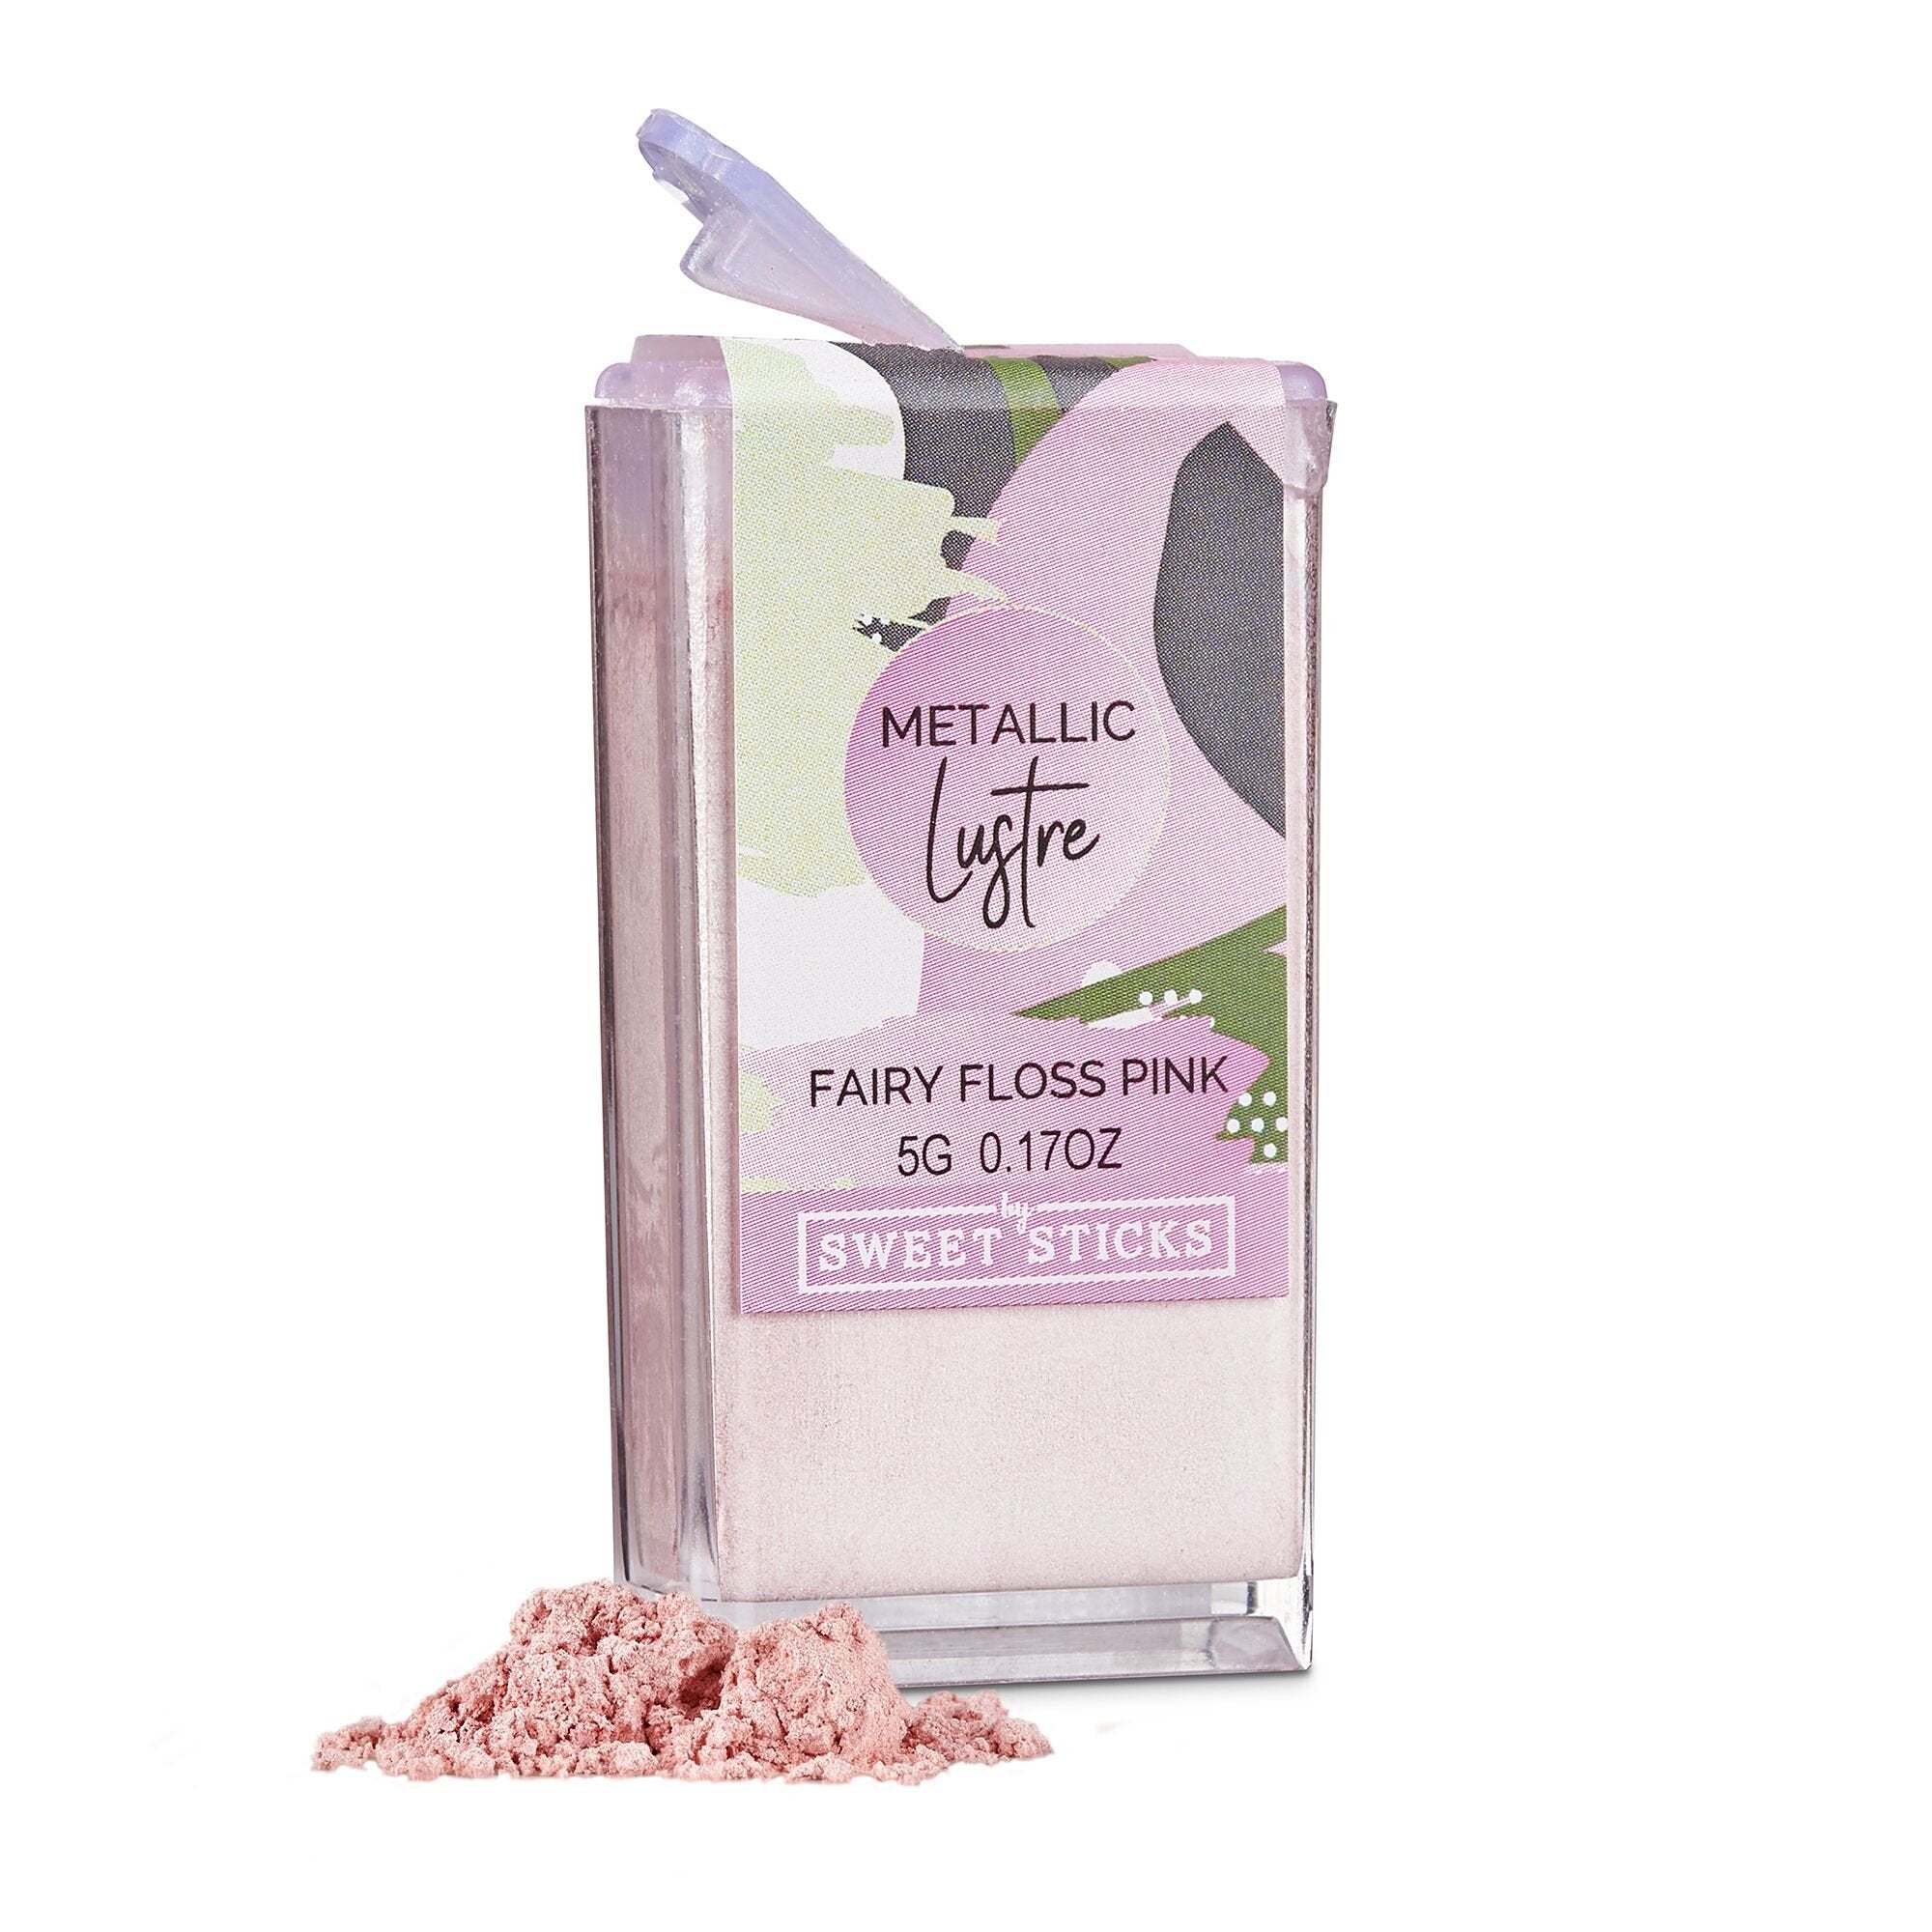 SWEETSTICKS 100% Edible Metallic Lustre Dust - 5g - Fairy Floss